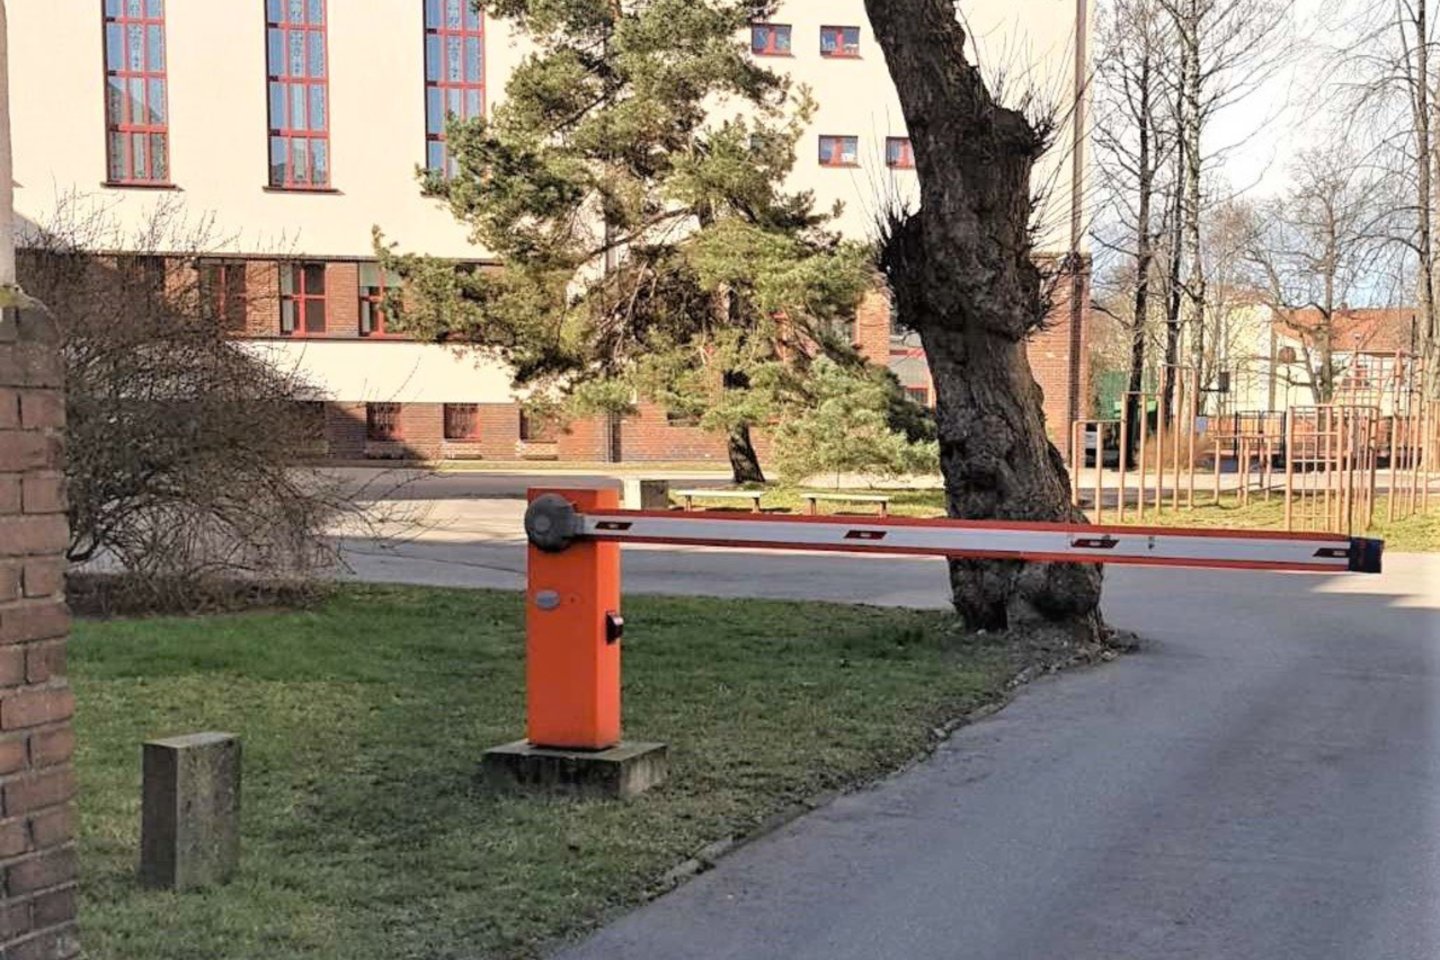  Klaipėdos gimnazijos direktorius iš moksleivių rinko pinigus už automobilių parkavimą.<br> FNTT nuotr.